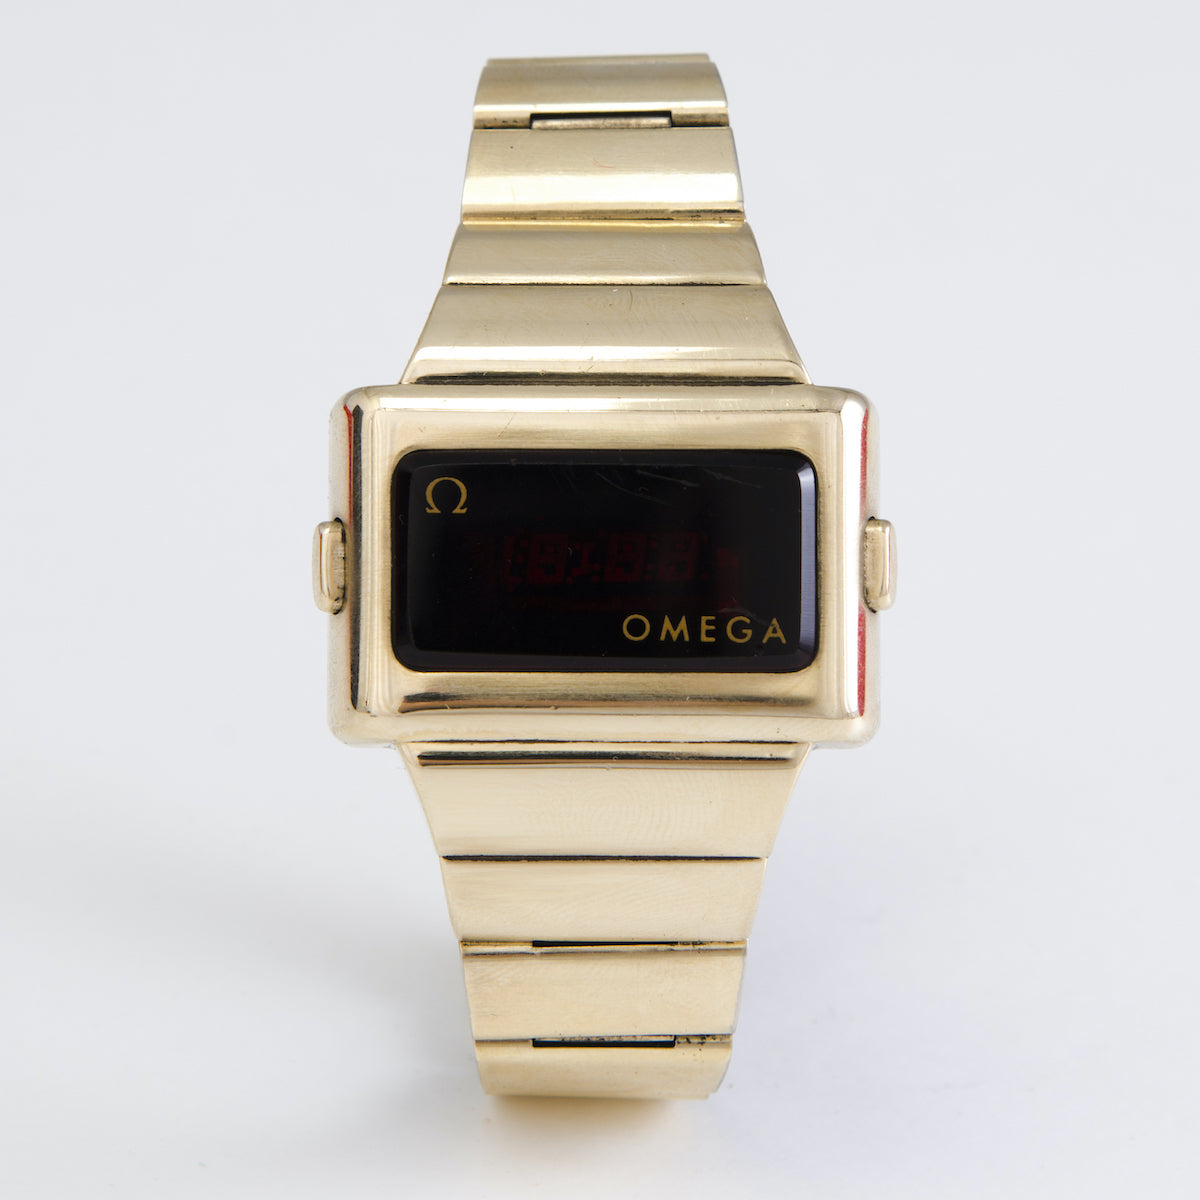 技術の進化は、このオメガのタイムコンピューターTC2、金メッキのデジタルLED腕時計のような、よりエキゾチックなモデルも誕生させた。